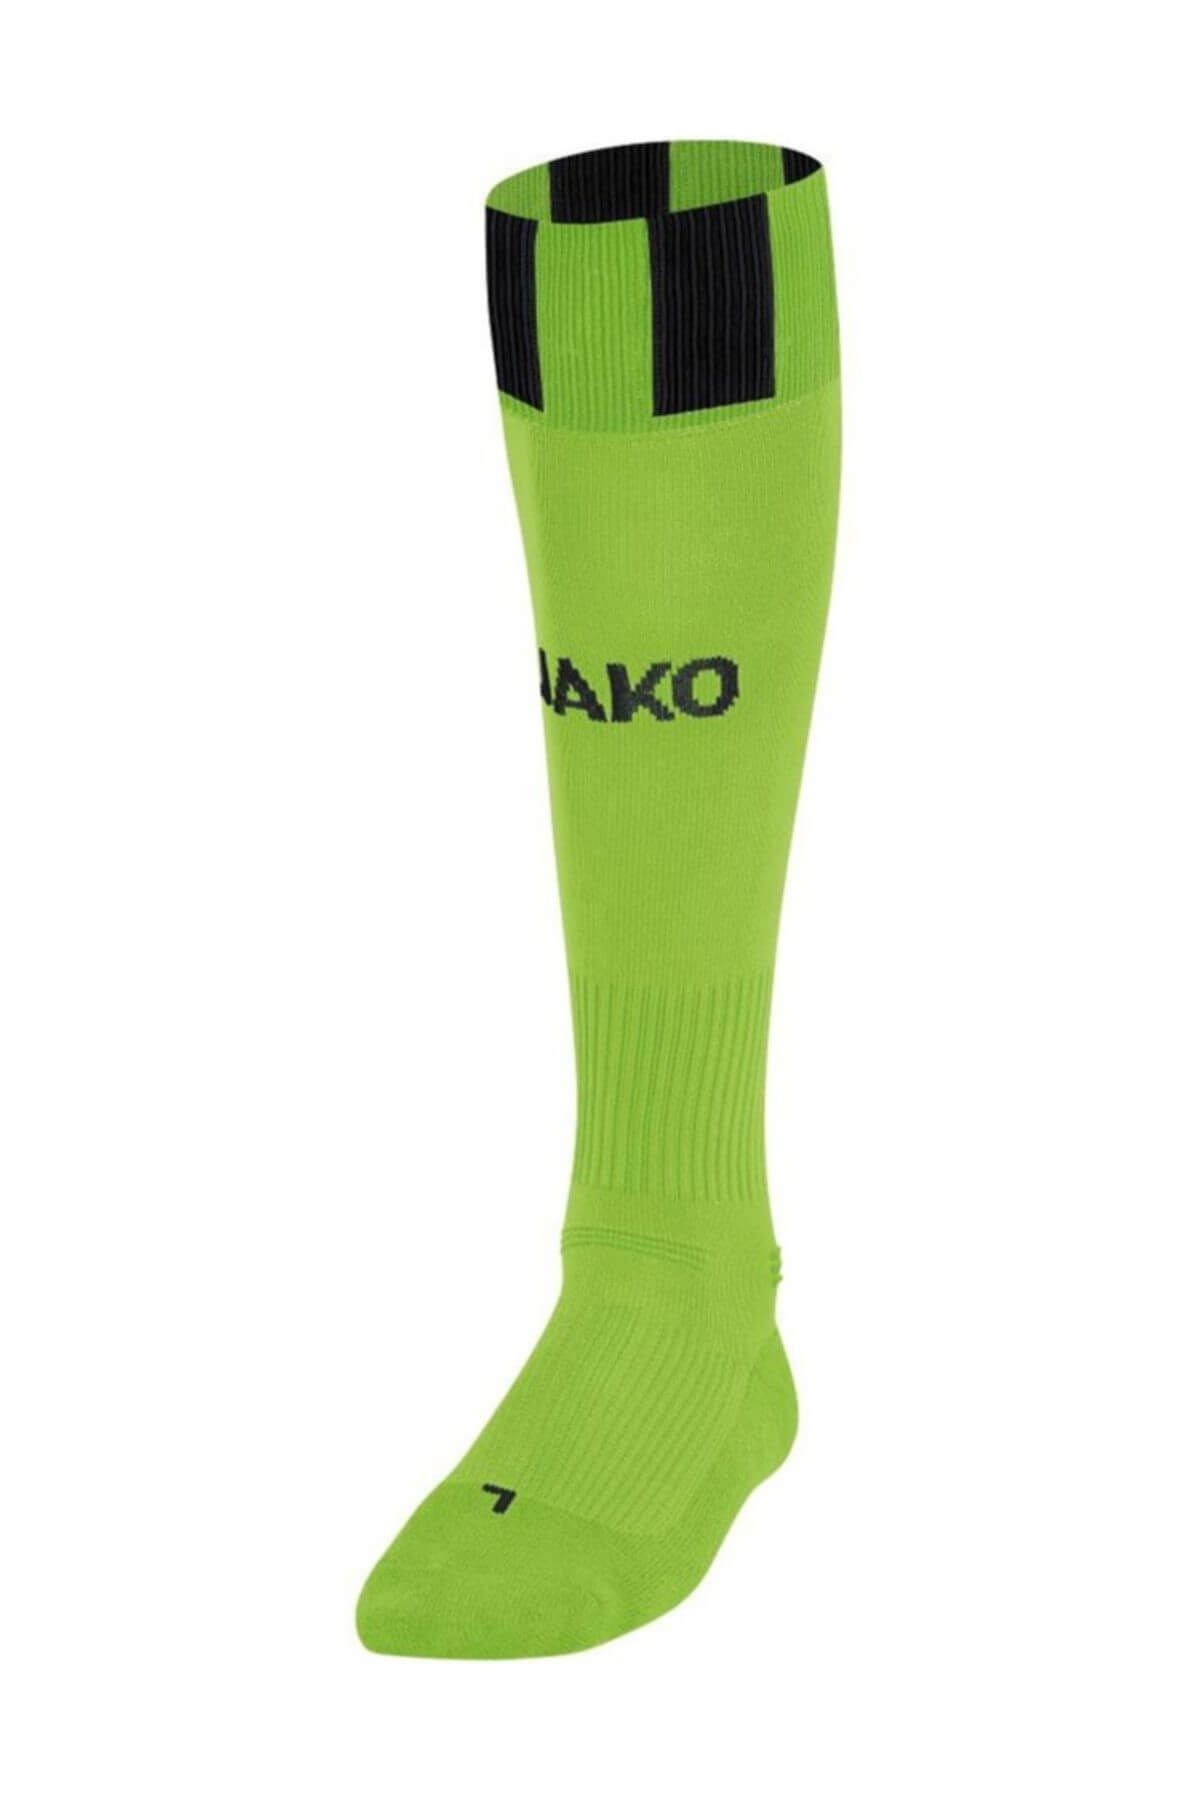 Jako Socks Eintracht Futbol Çorabı